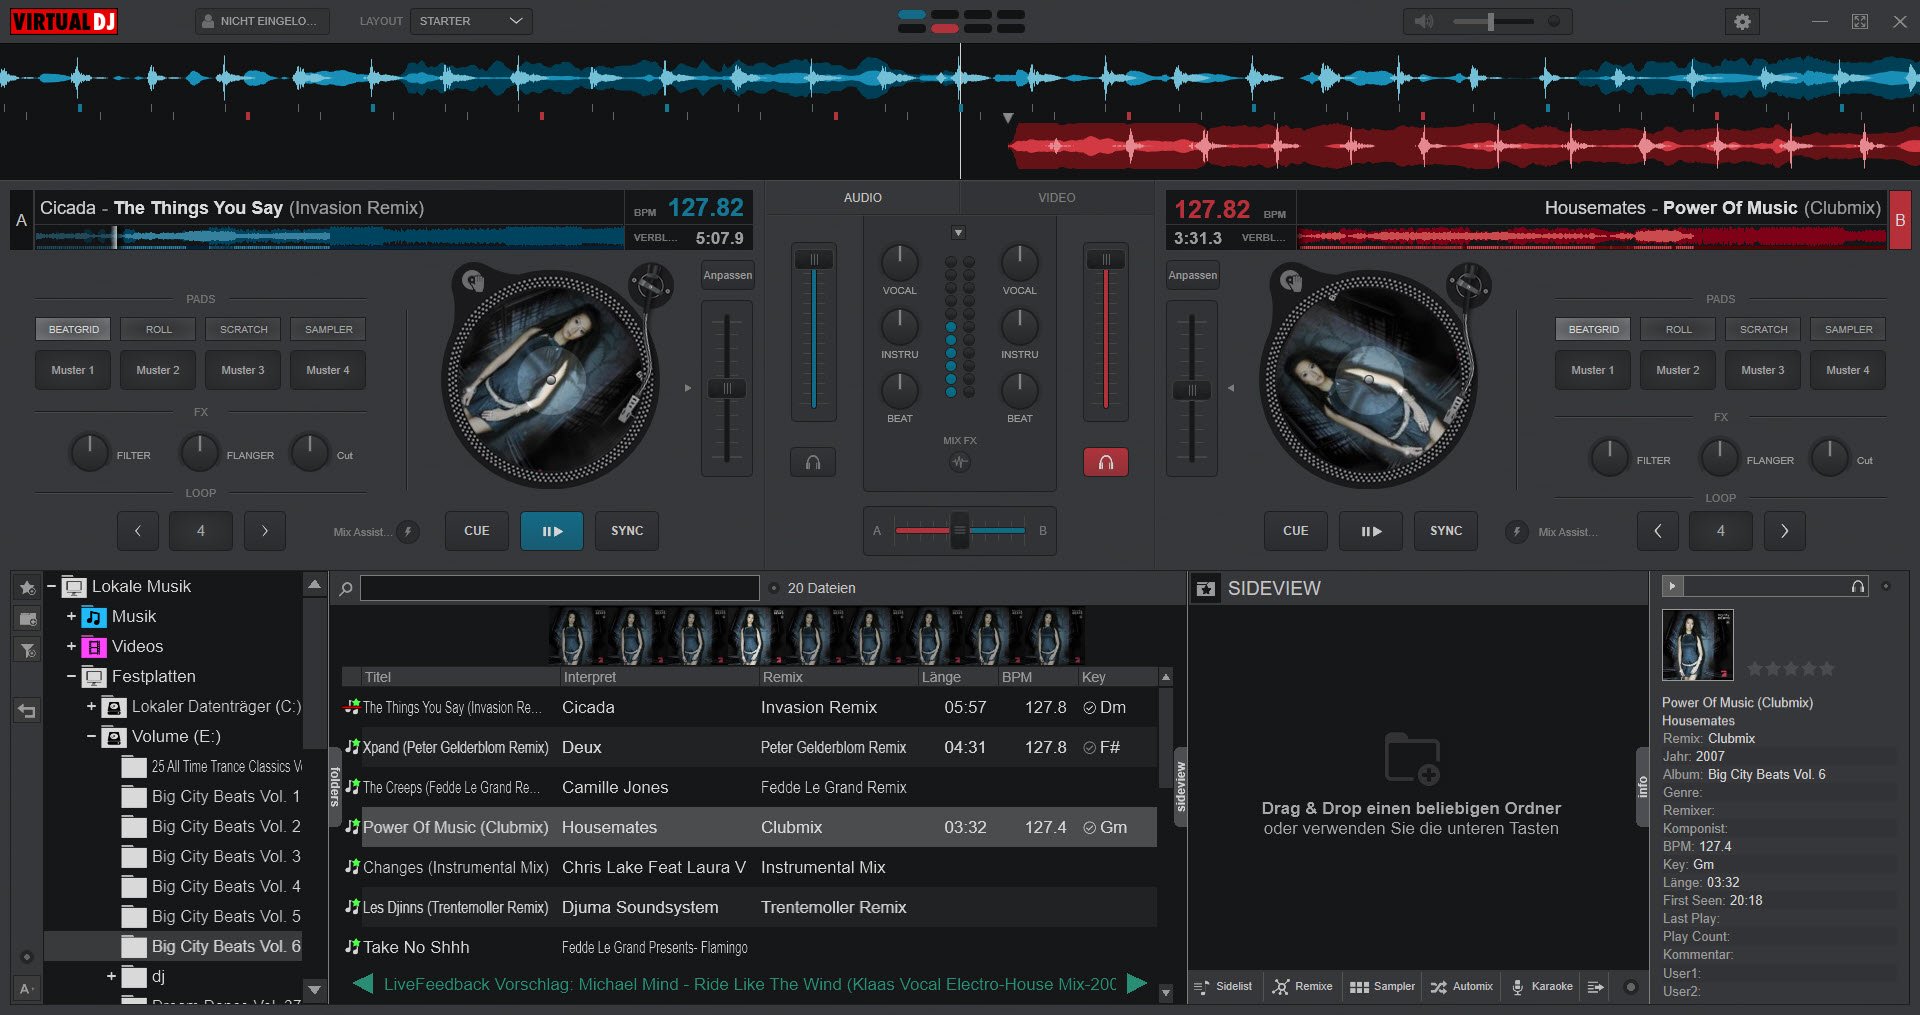 VirtualDJ ist auch eine Free DJ-Software mit zwei Decks und Turntables.